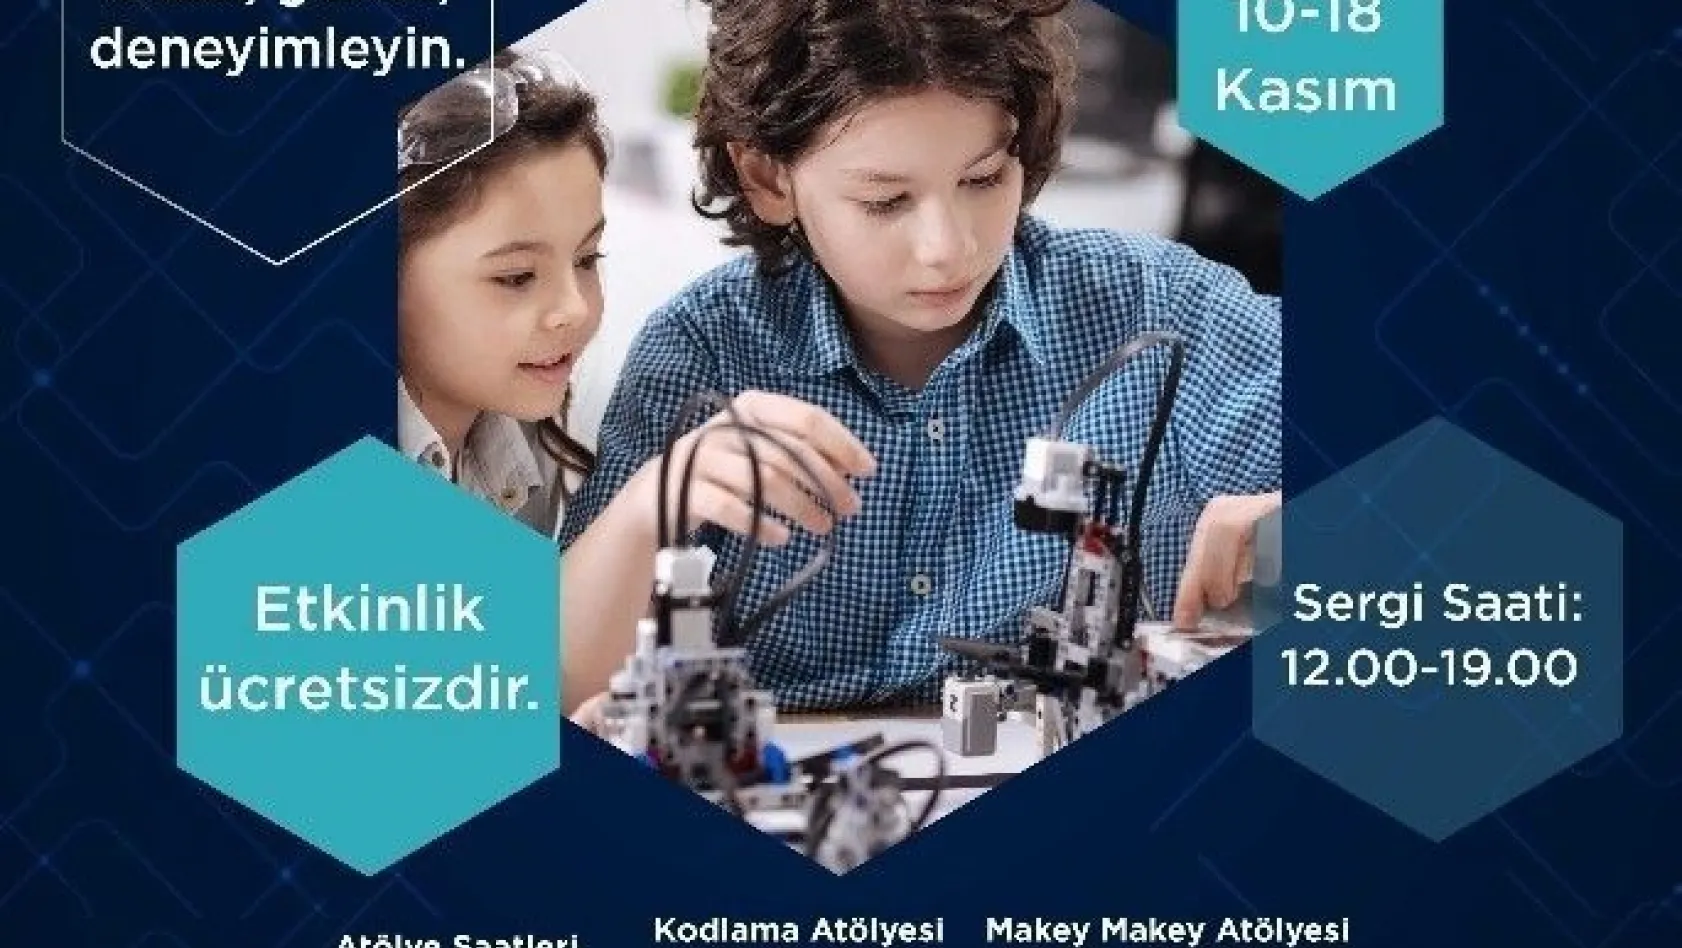 Forum Erzurum çocukları geleceğin teknolojisiyle buluşturuyor
